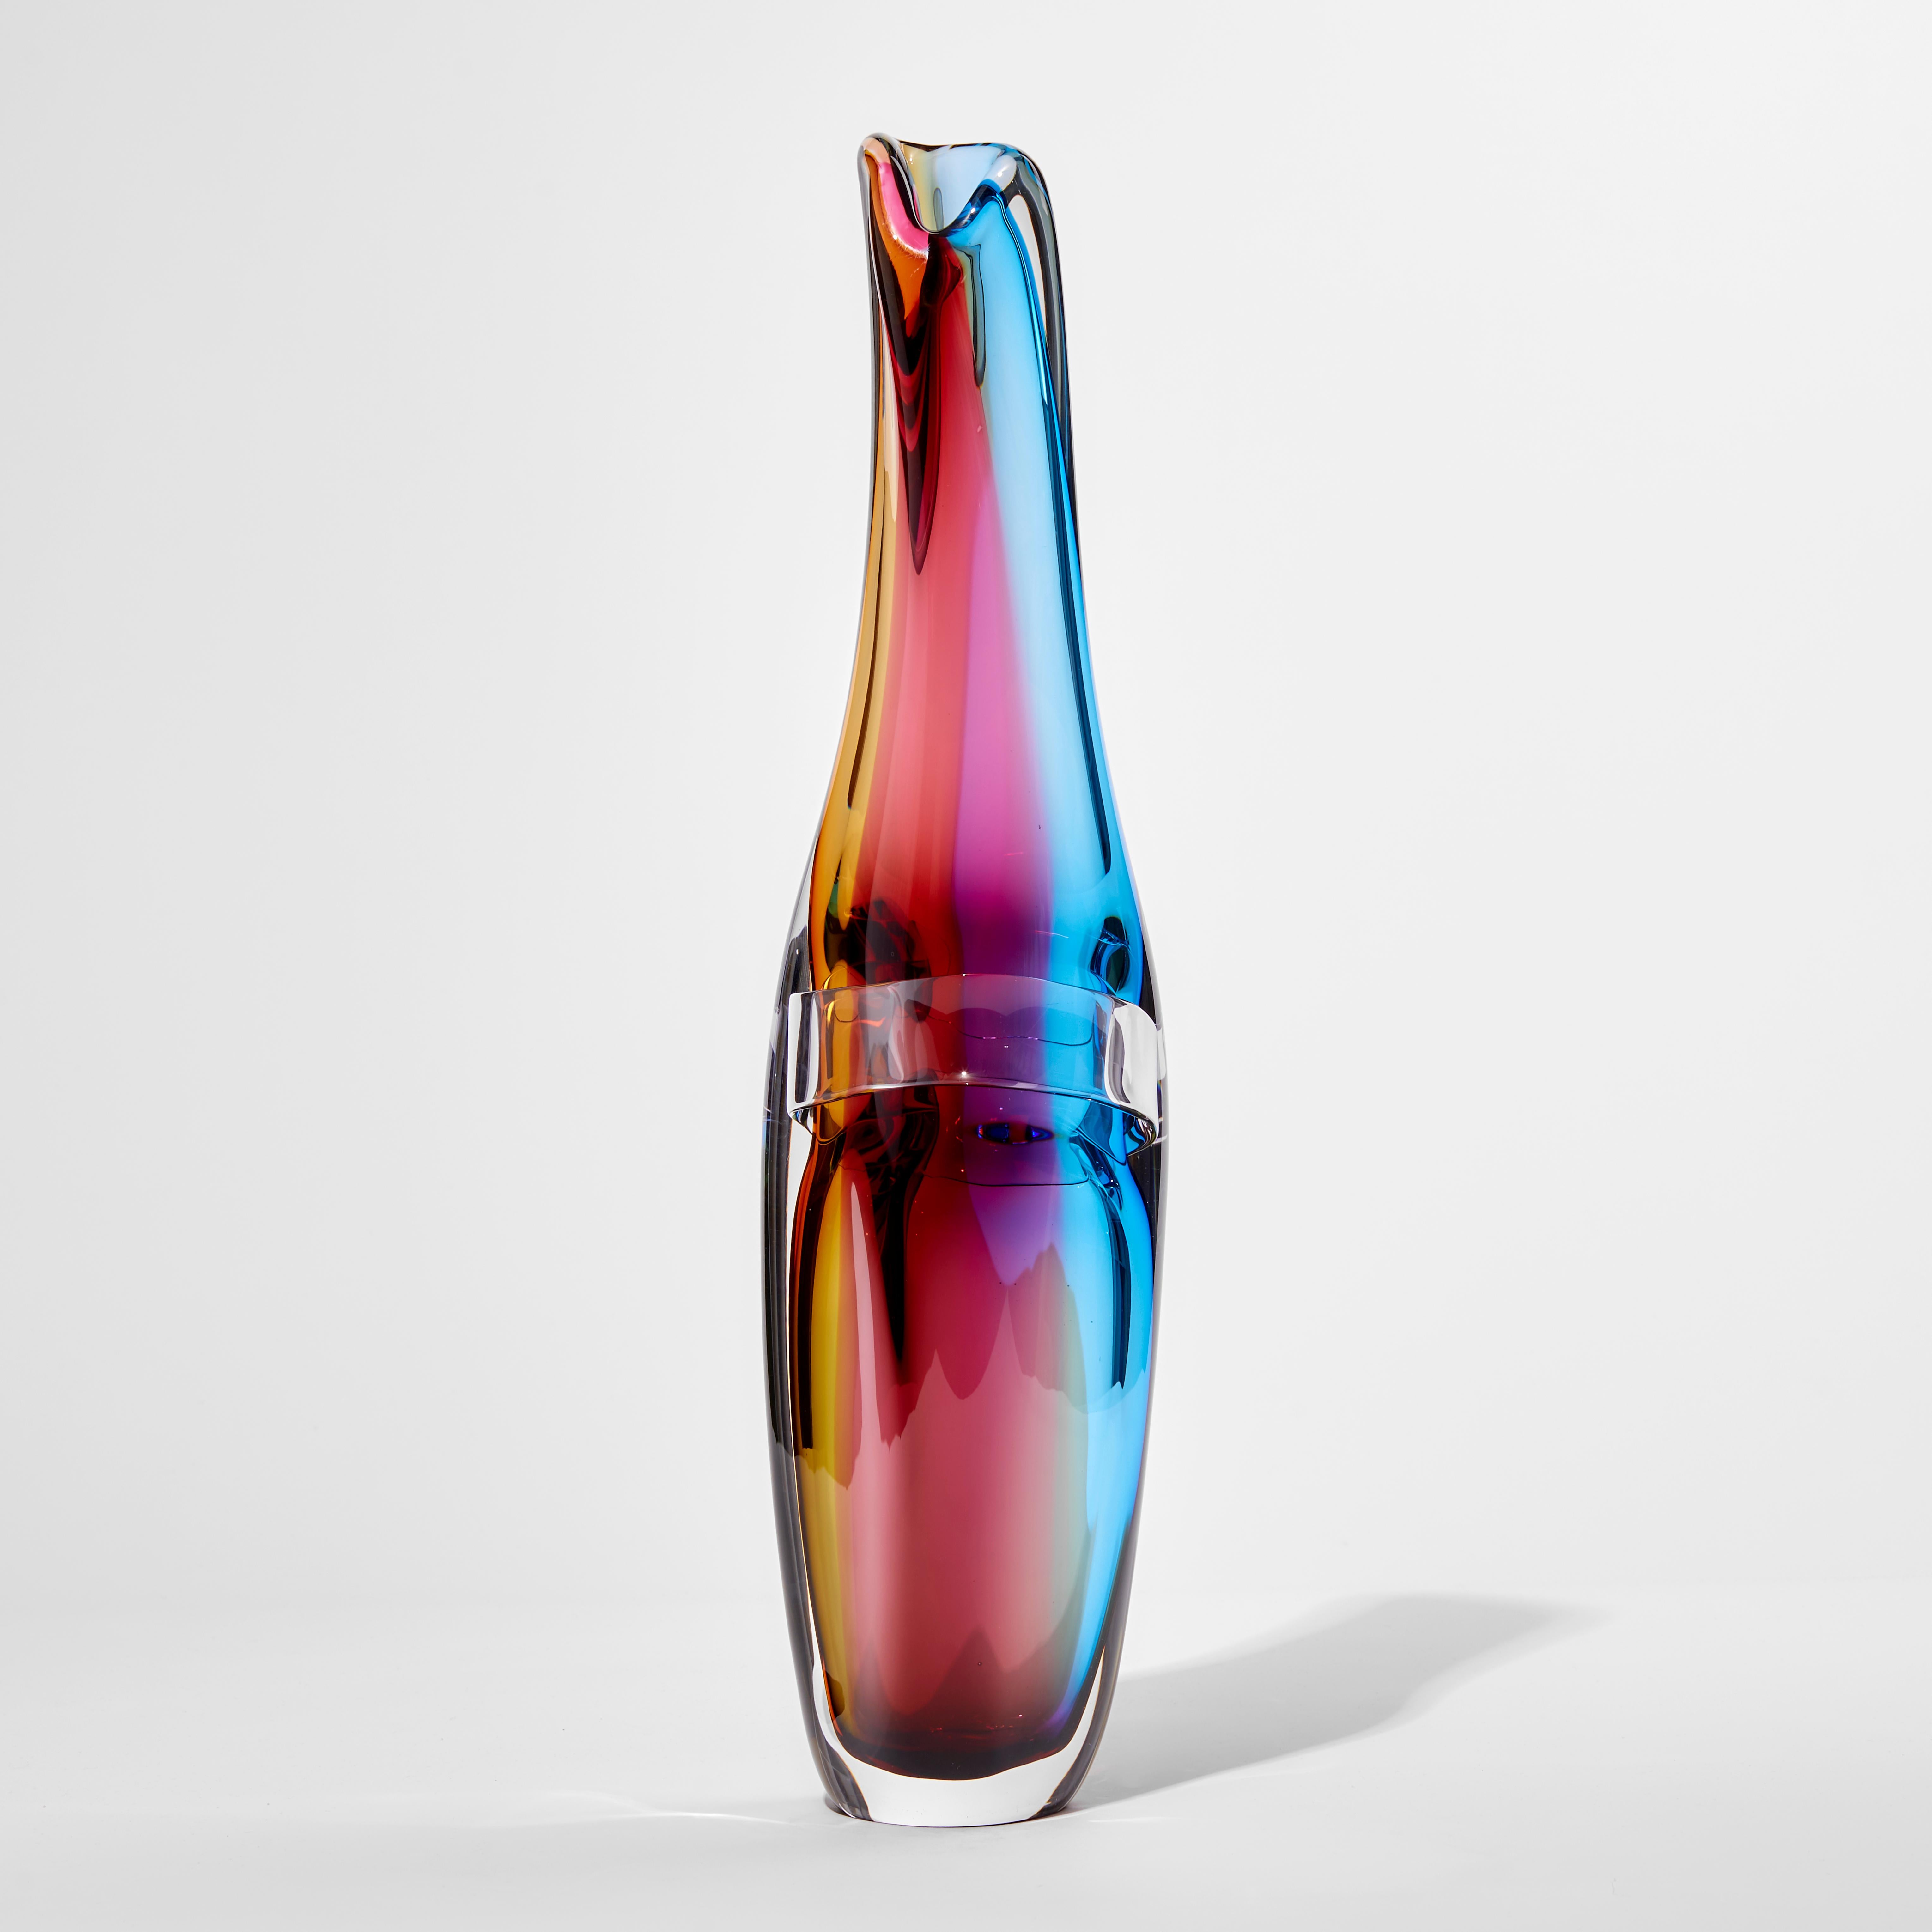 unique glass vase